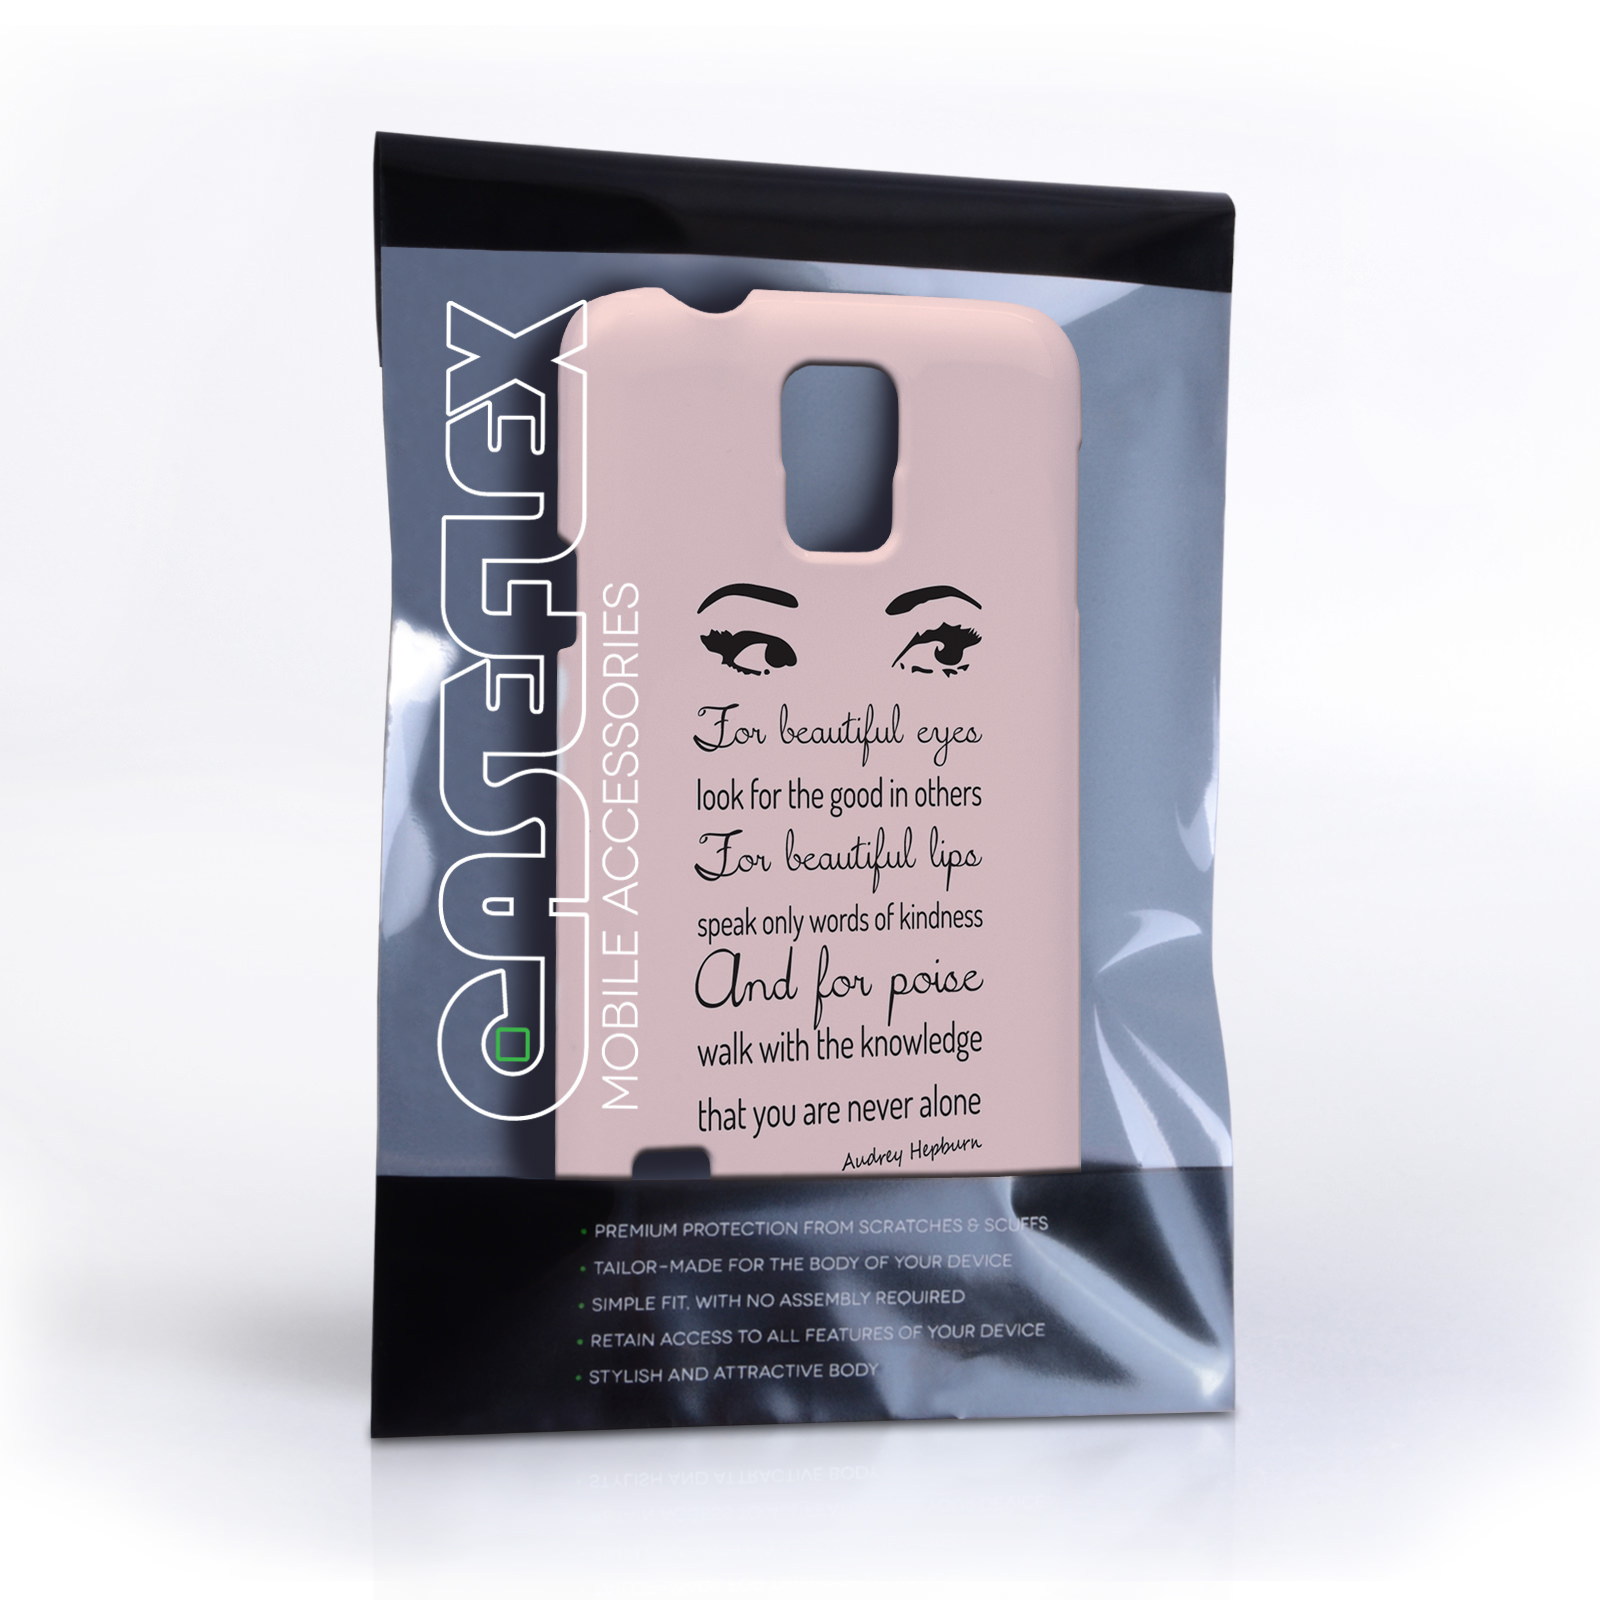 Caseflex Samsung Galaxy S5 Audrey Hepburn ‘Eyes’ Quote Case